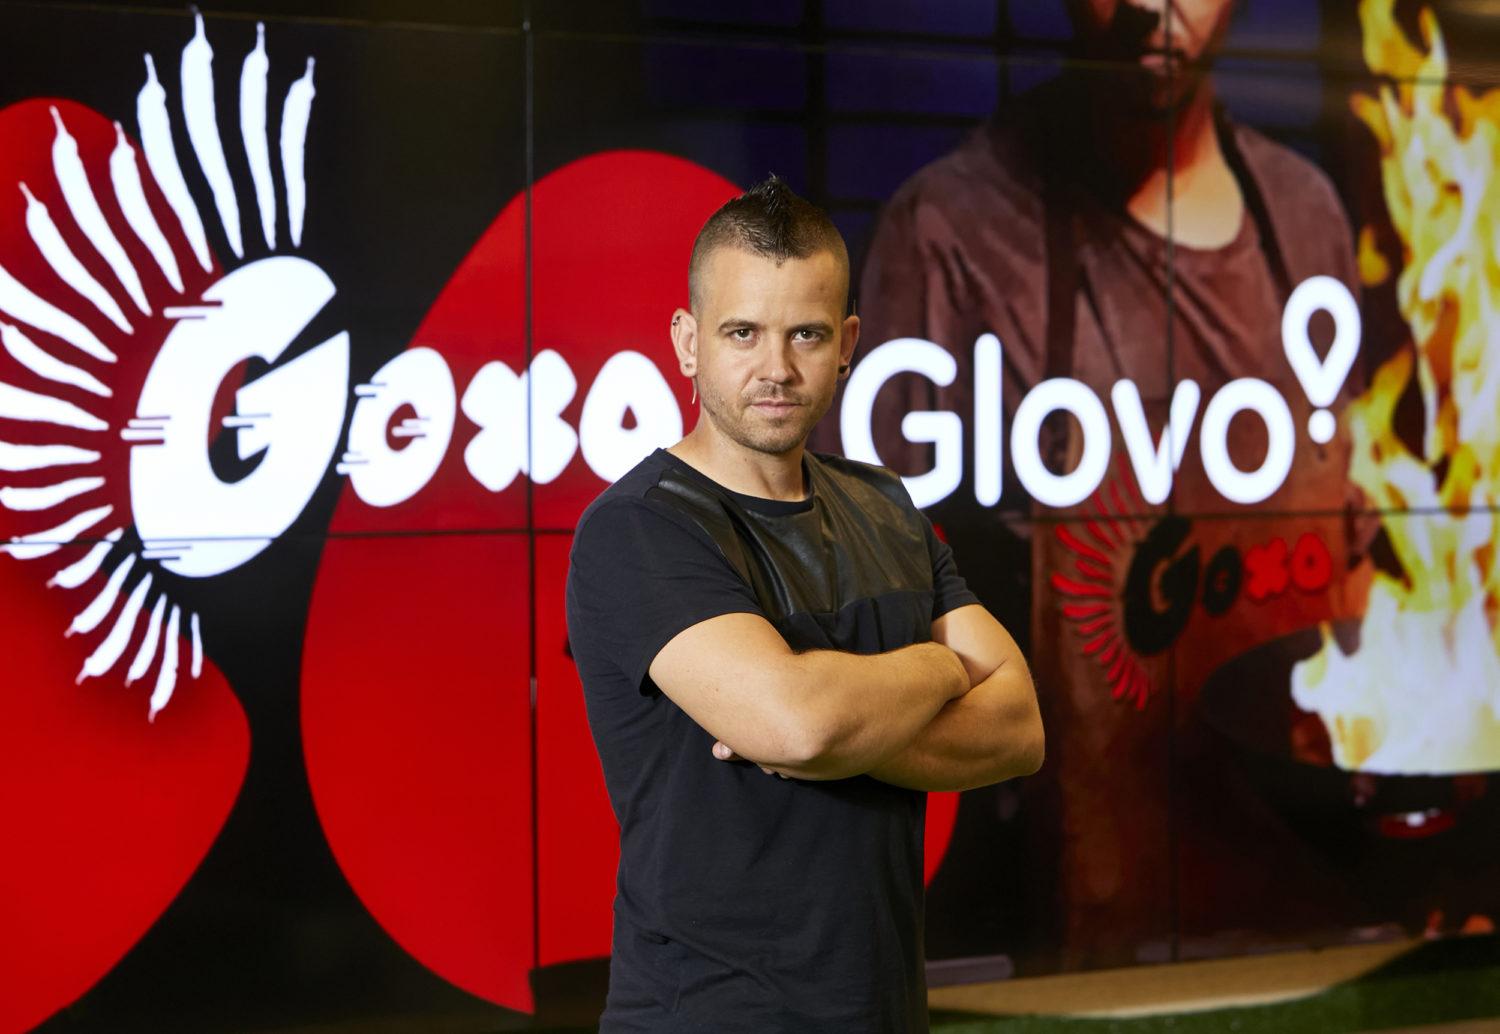 El GoXO de Dabiz Muñoz llega a Barcelona en exclusiva con Glovo - Just Retail